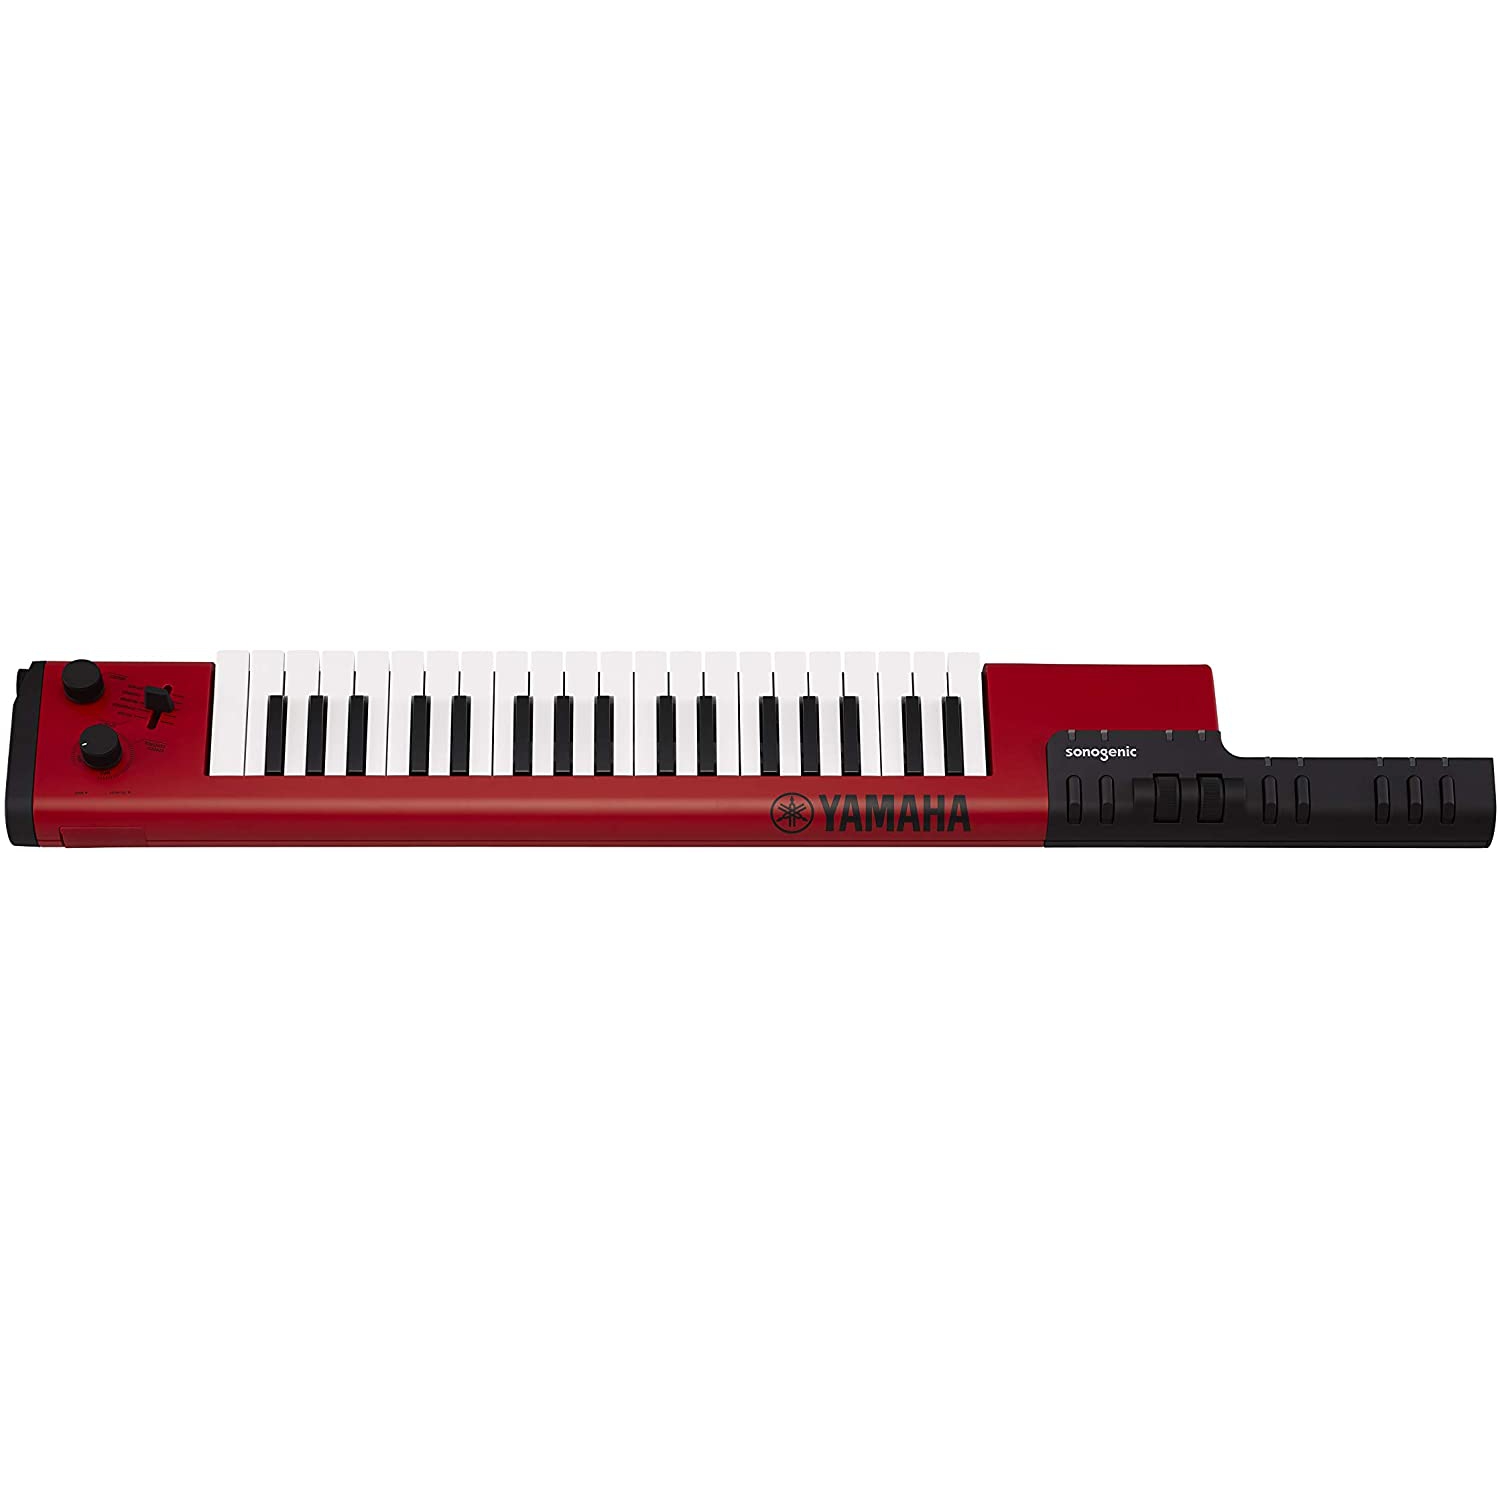 Yamaha Sonogenic SHS-500RD 37 Tuşlu Keytar &amp; MIDI Controller (Kırmızı)